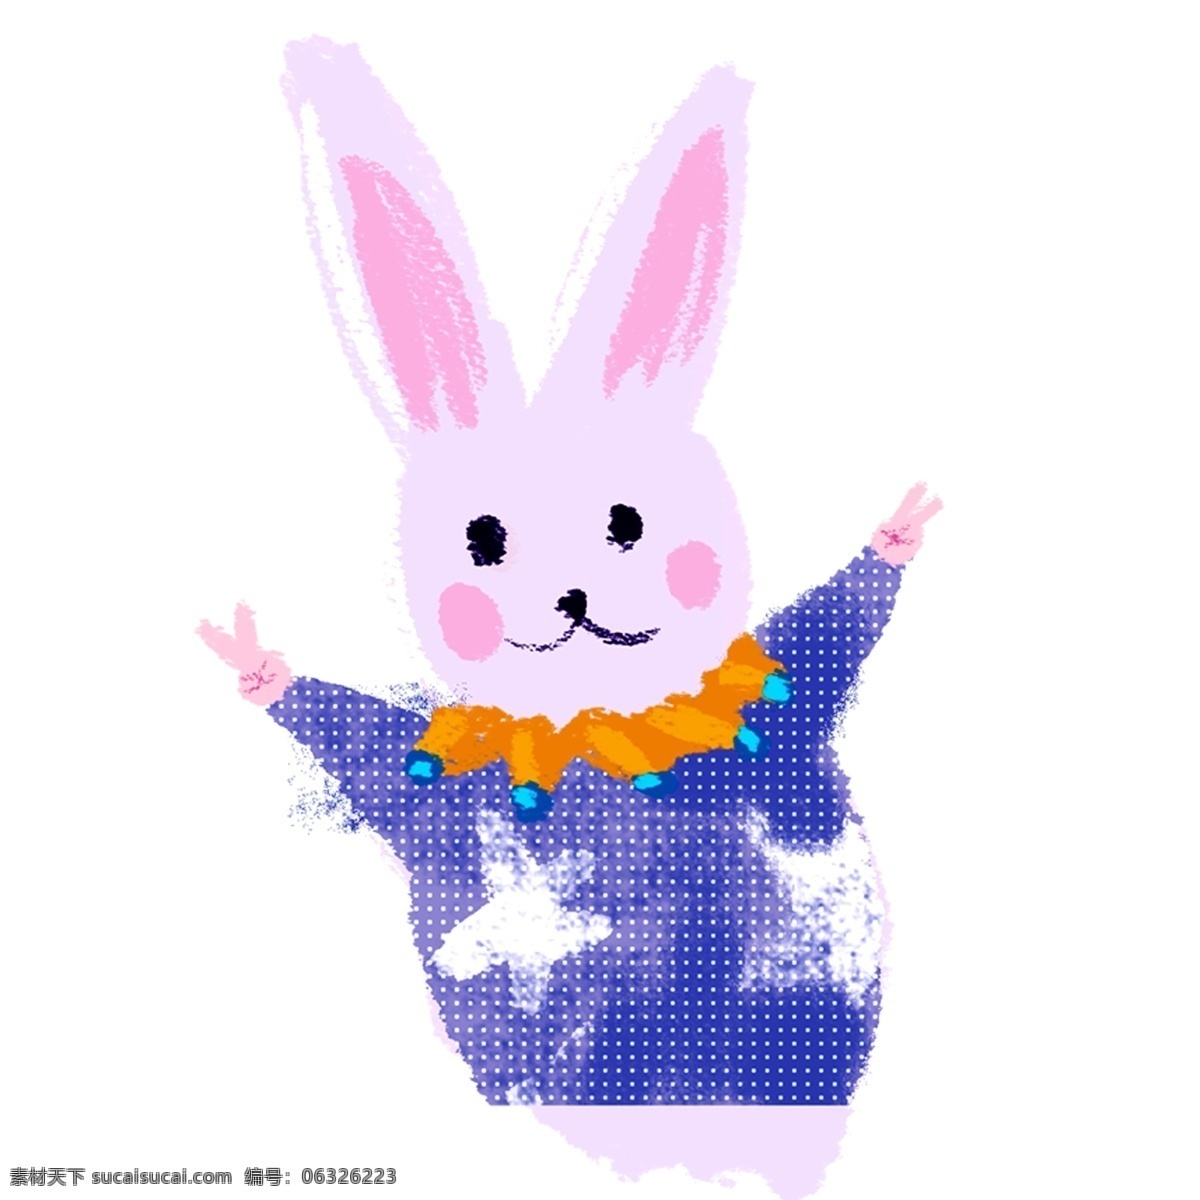 紫色 创意 可爱 小 兔子 元素 创意可爱 耳朵 穿着 服饰 五角星 眼睛 嘴巴 鼻子 卡通插画 害羞 姿势 玩耍